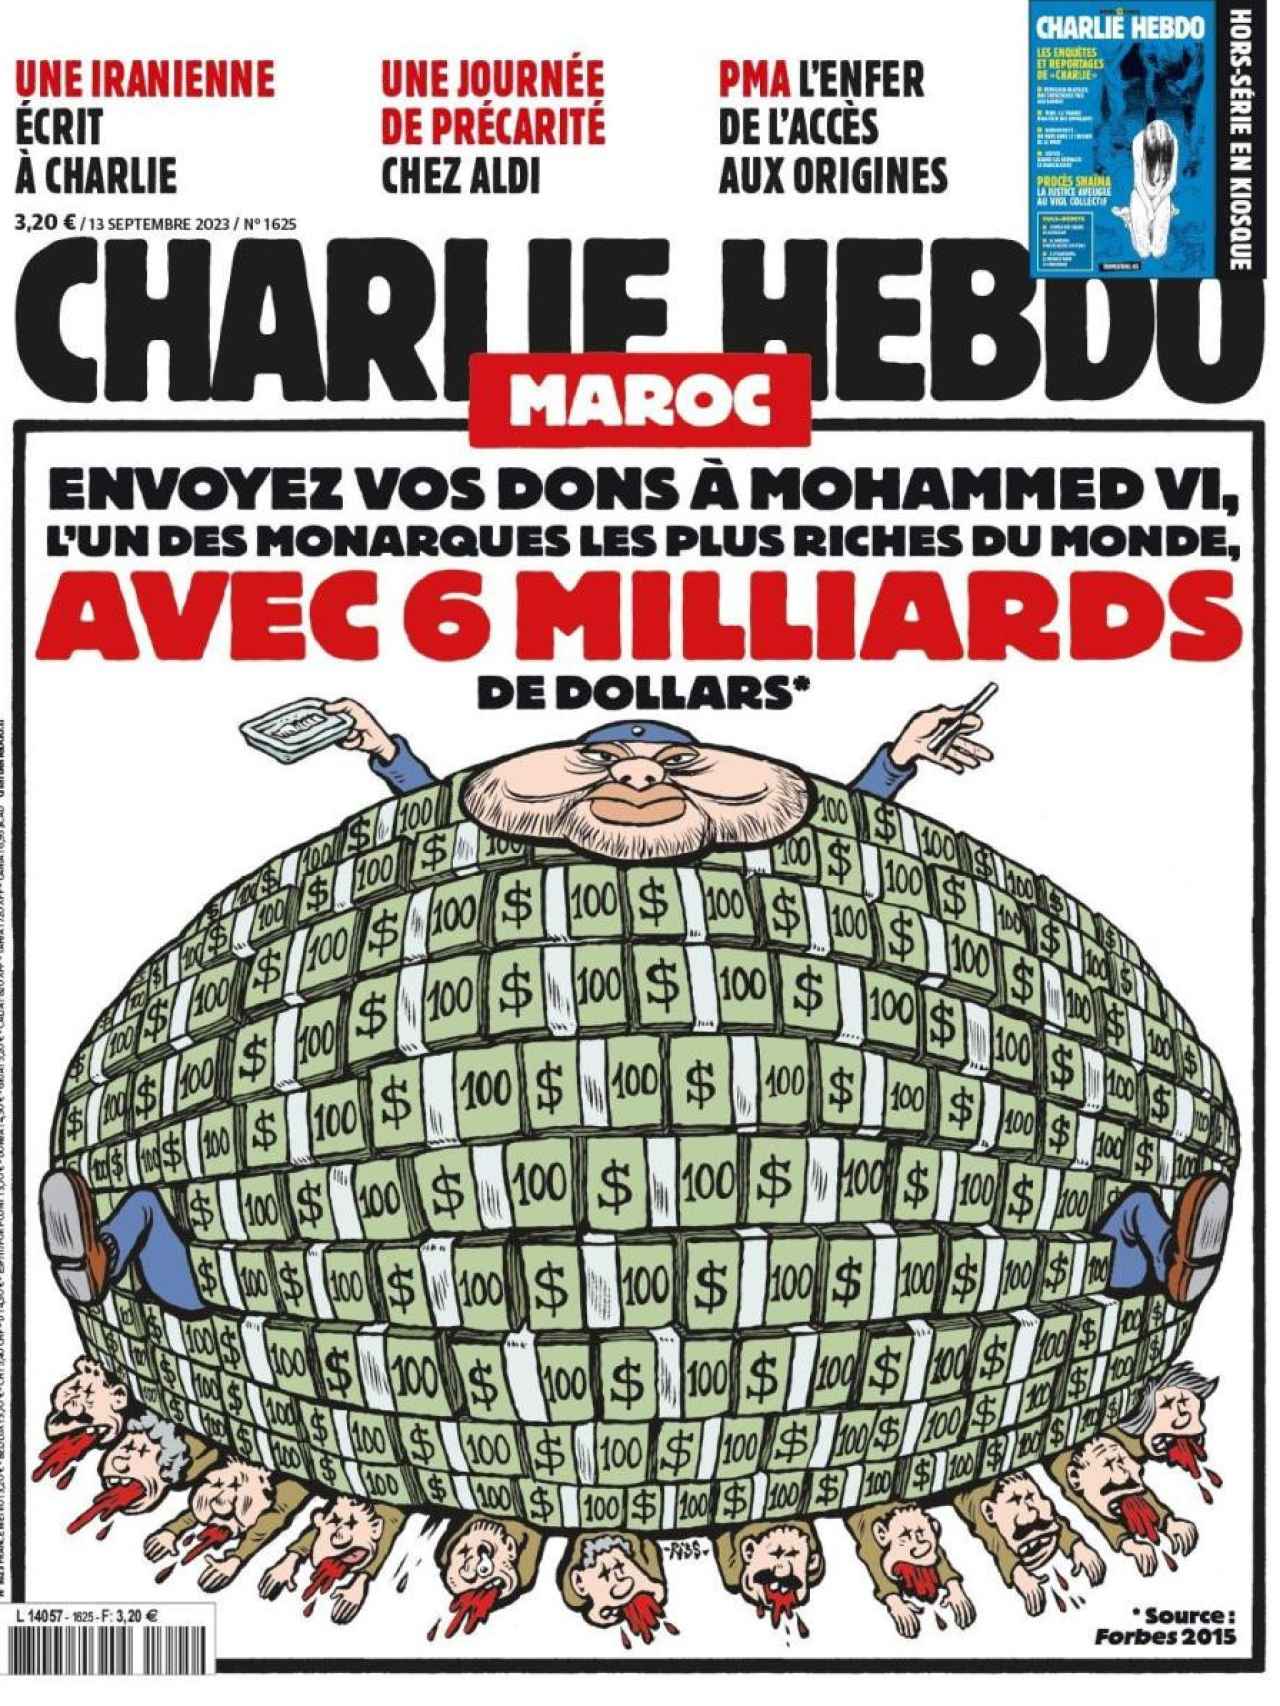 Portada del Charlie Hebdo del 13 de septiembre.